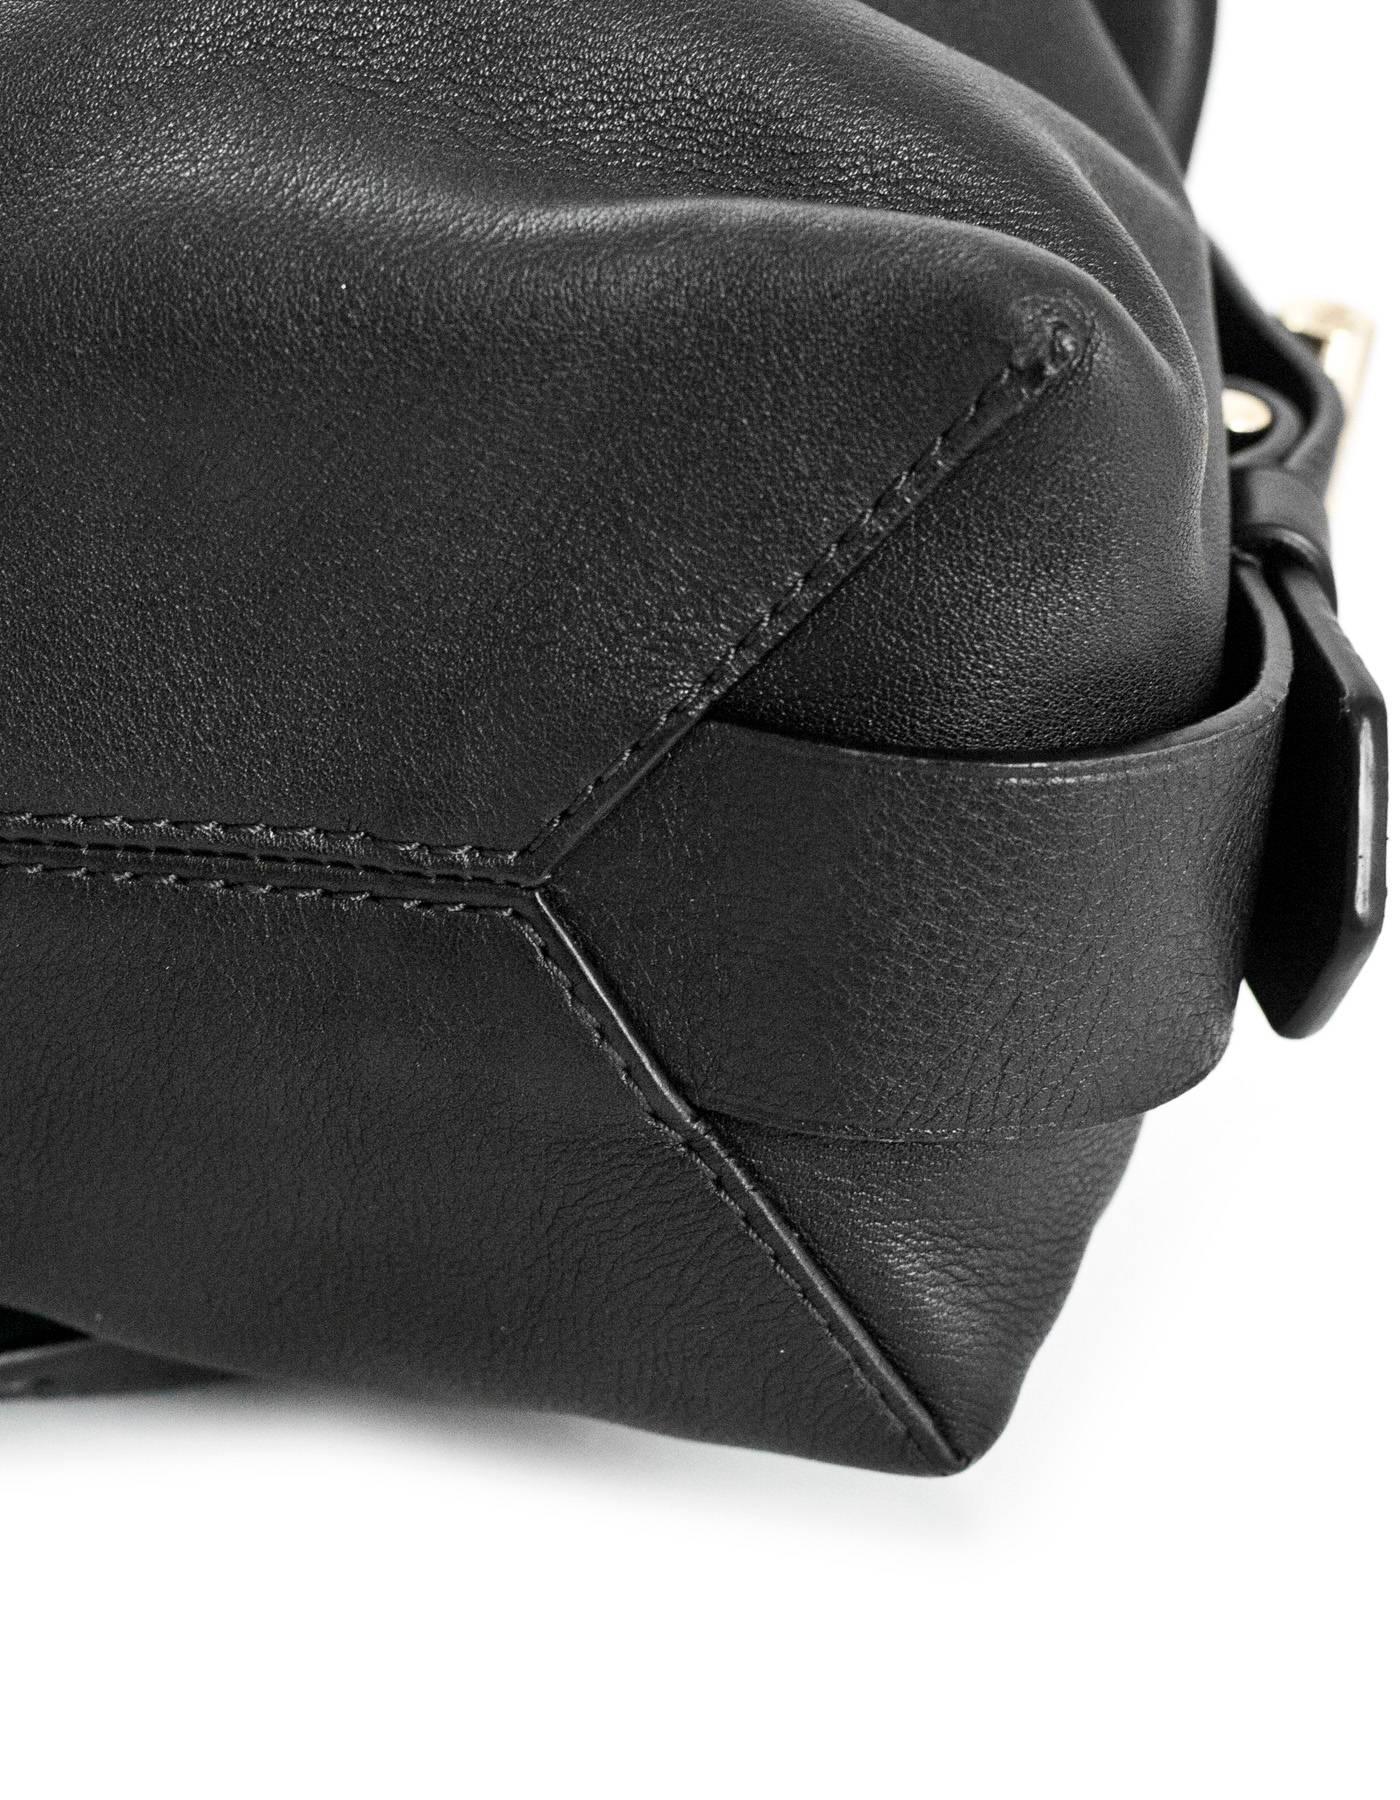 Reed Krakoff Black Leather Mini Atlas Satchel Bag 2